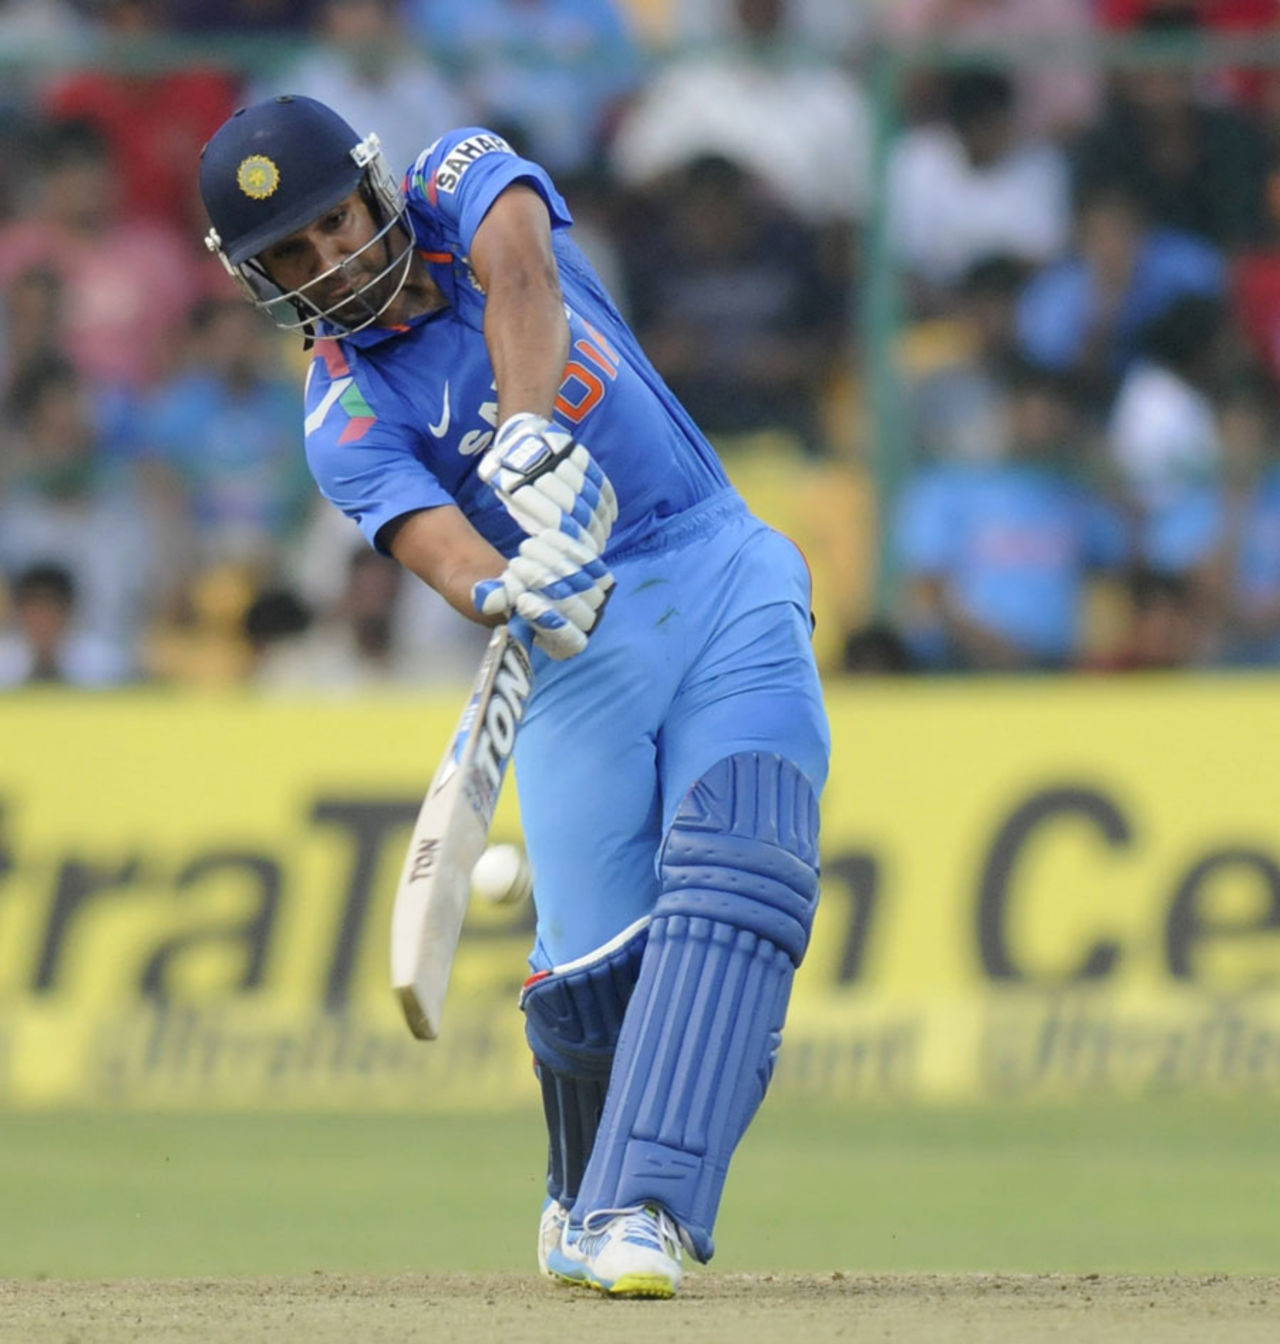 Rohit Sharma hits over the top, India v Australia, 7th ODI, Bangalore, November 2, 2013